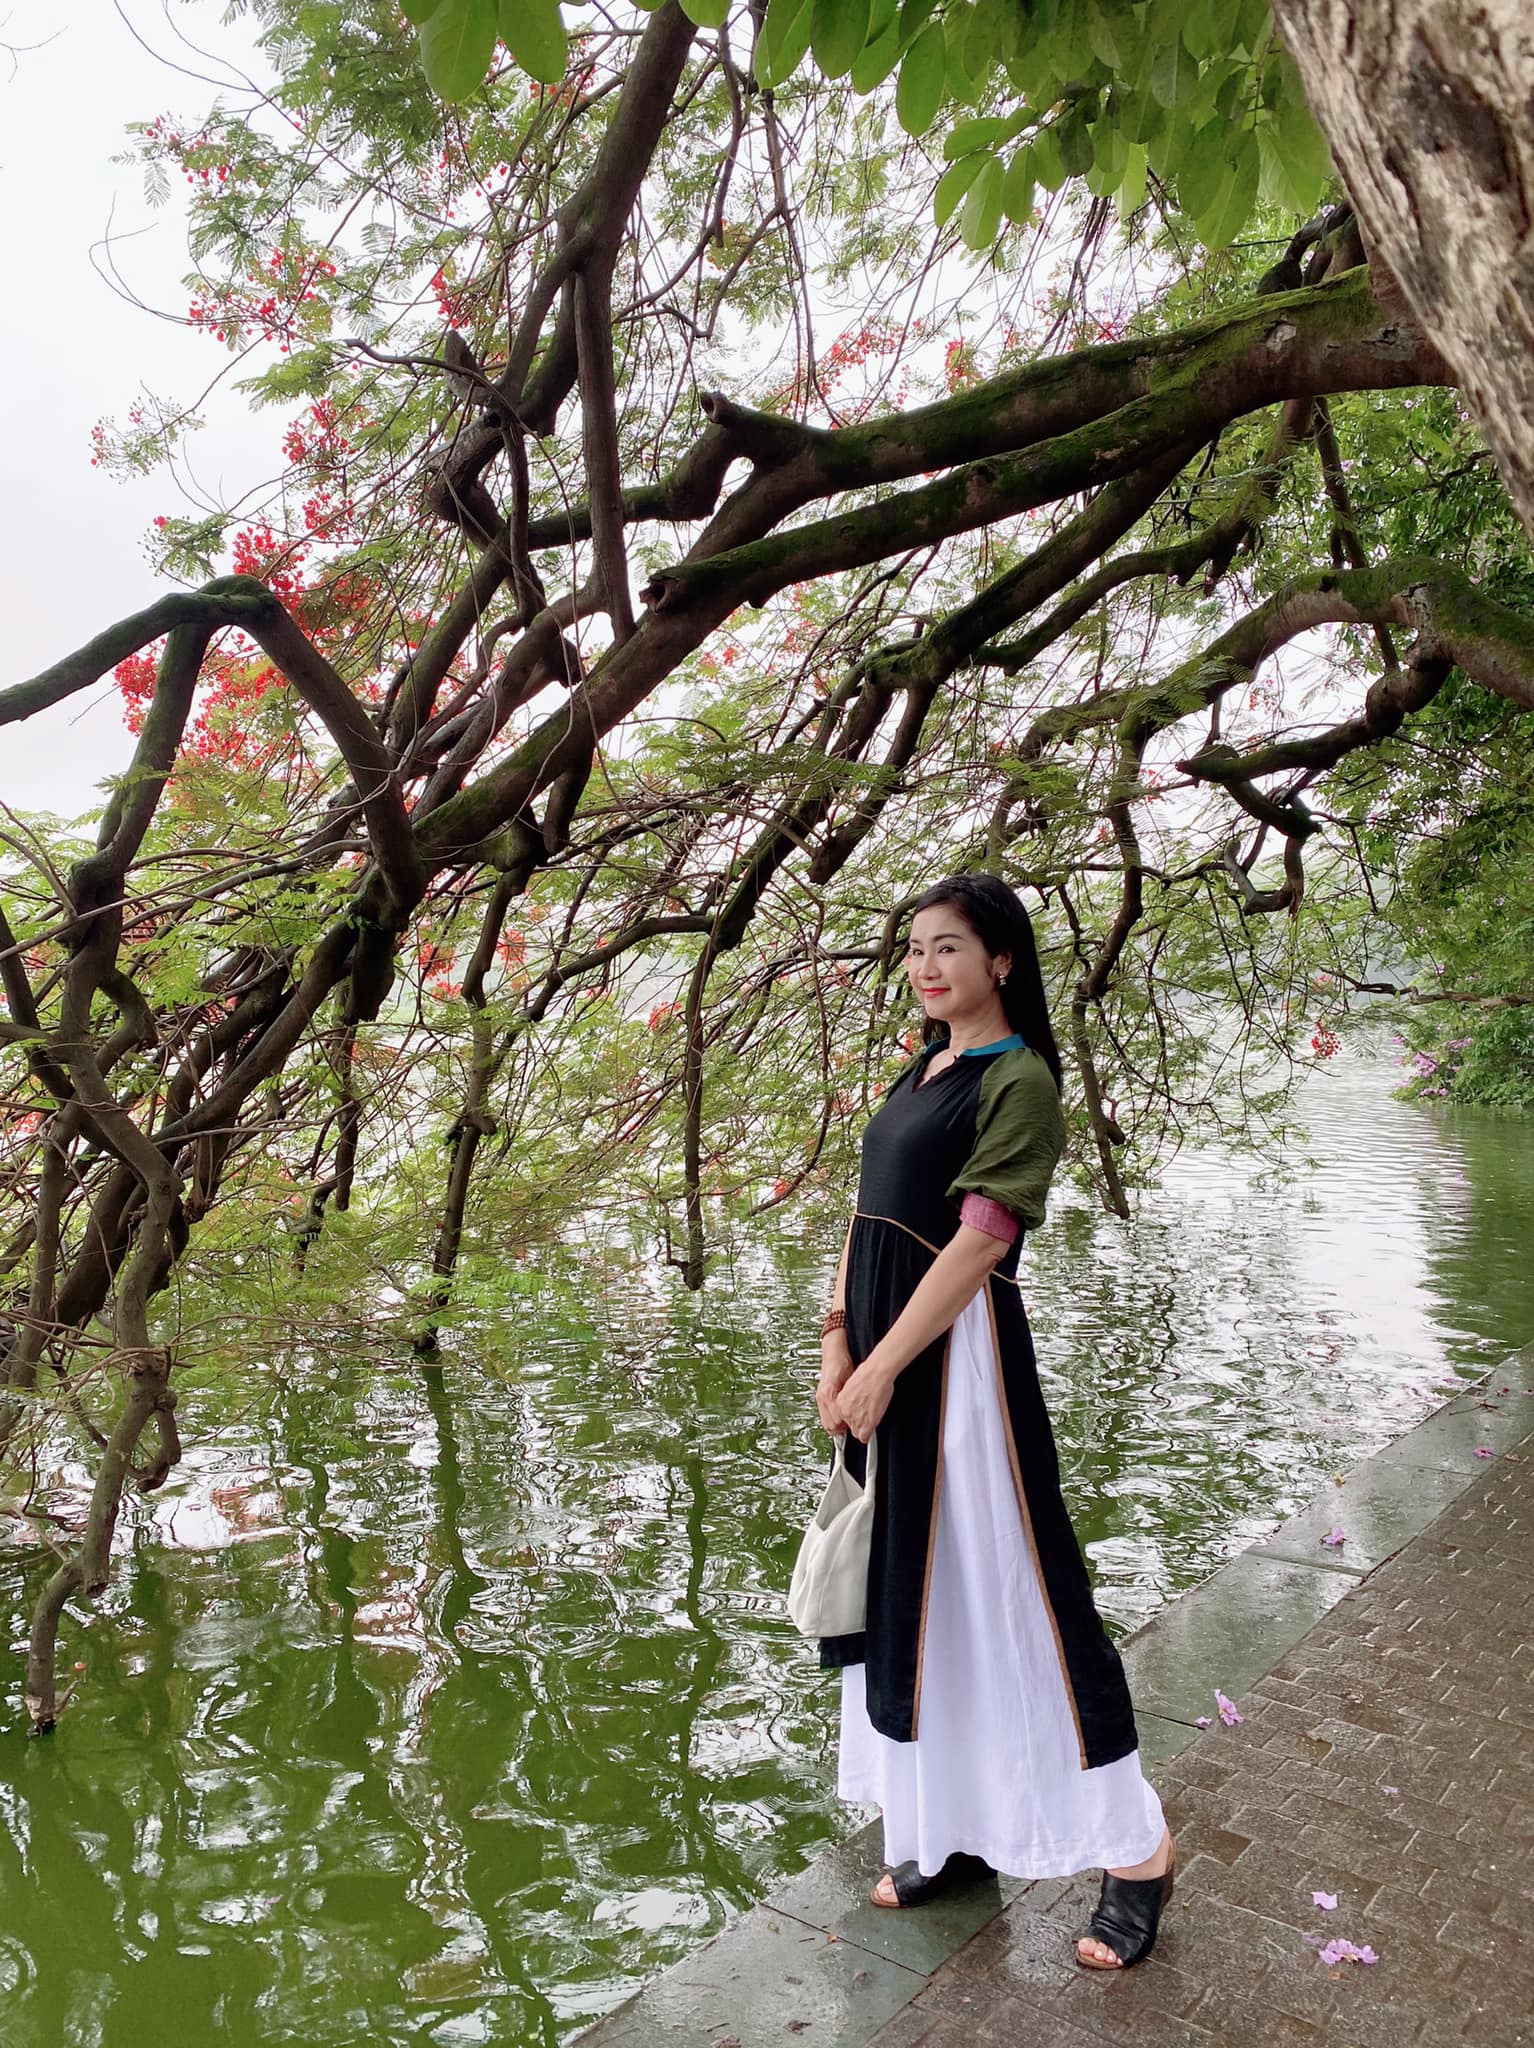 NSND Thu Hà mặc áo dài dạo Bờ Hồ giữa mùa đông tháng 5, nhan sắc nền nã tuổi 53 - Ảnh 3